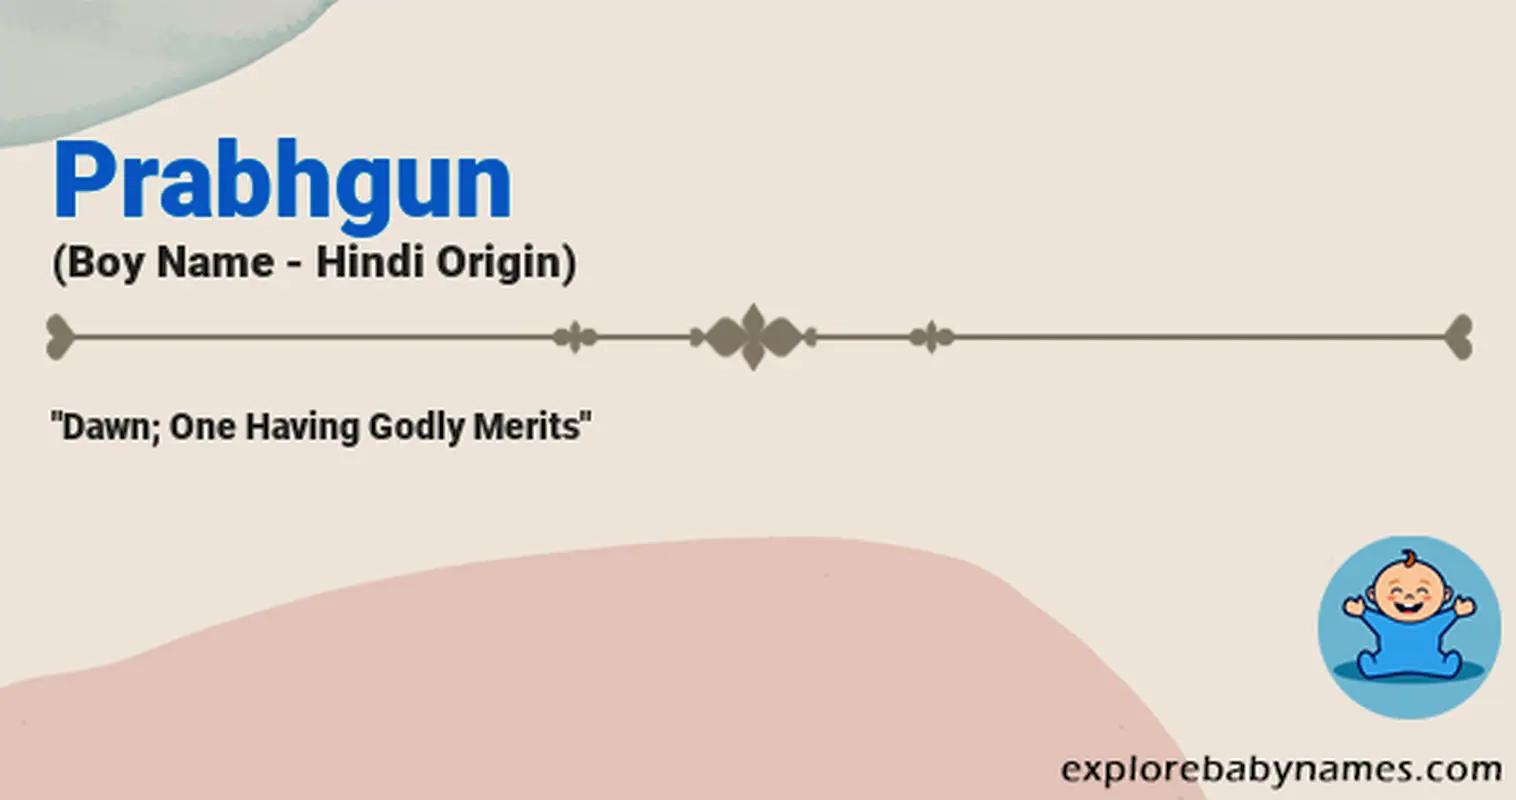 Meaning of Prabhgun